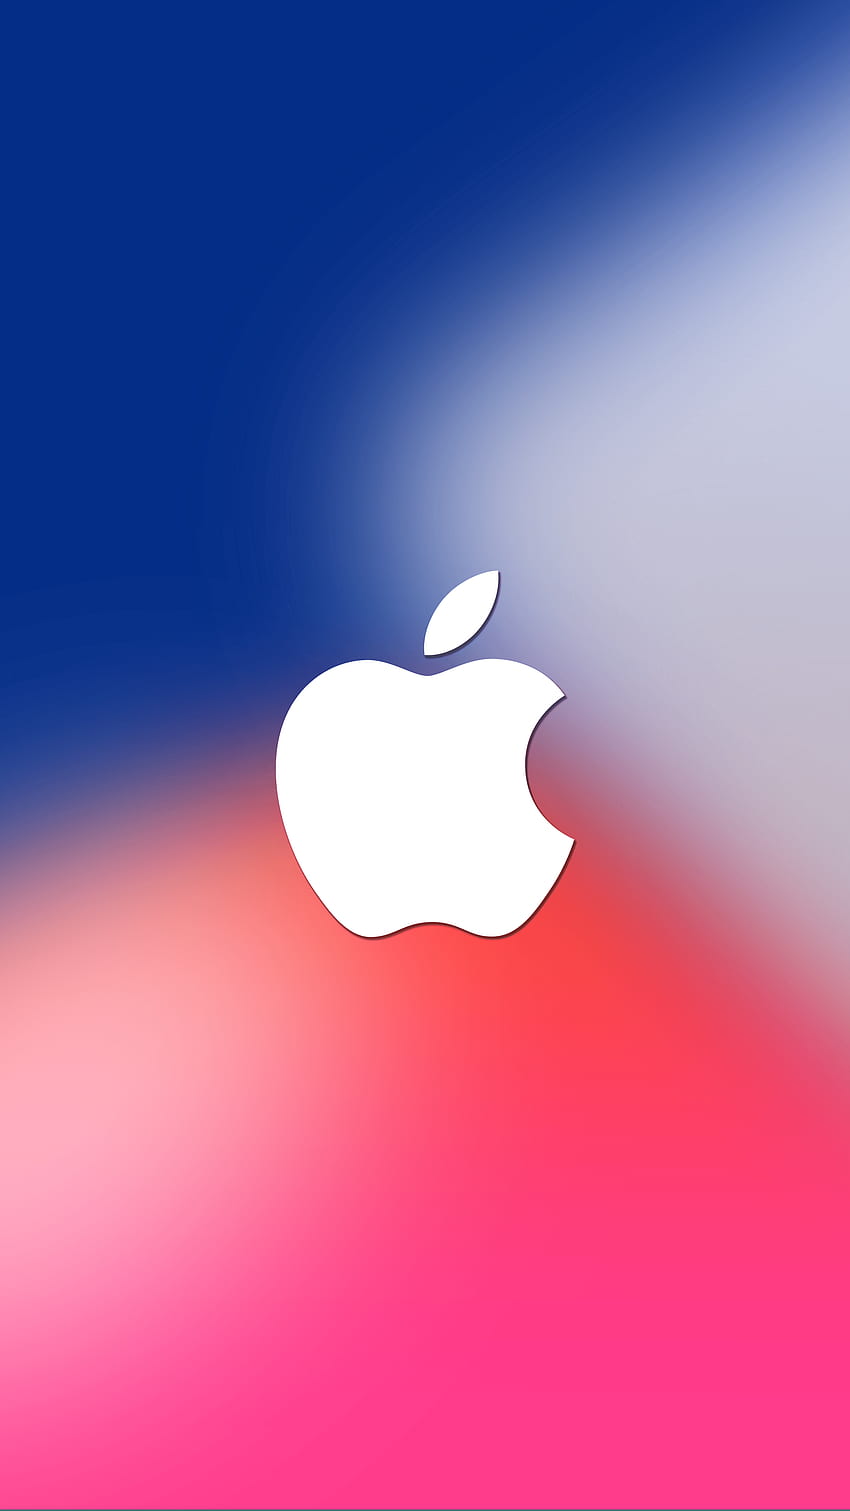 50+] Free Apple iPhone Wallpapers - WallpaperSafari